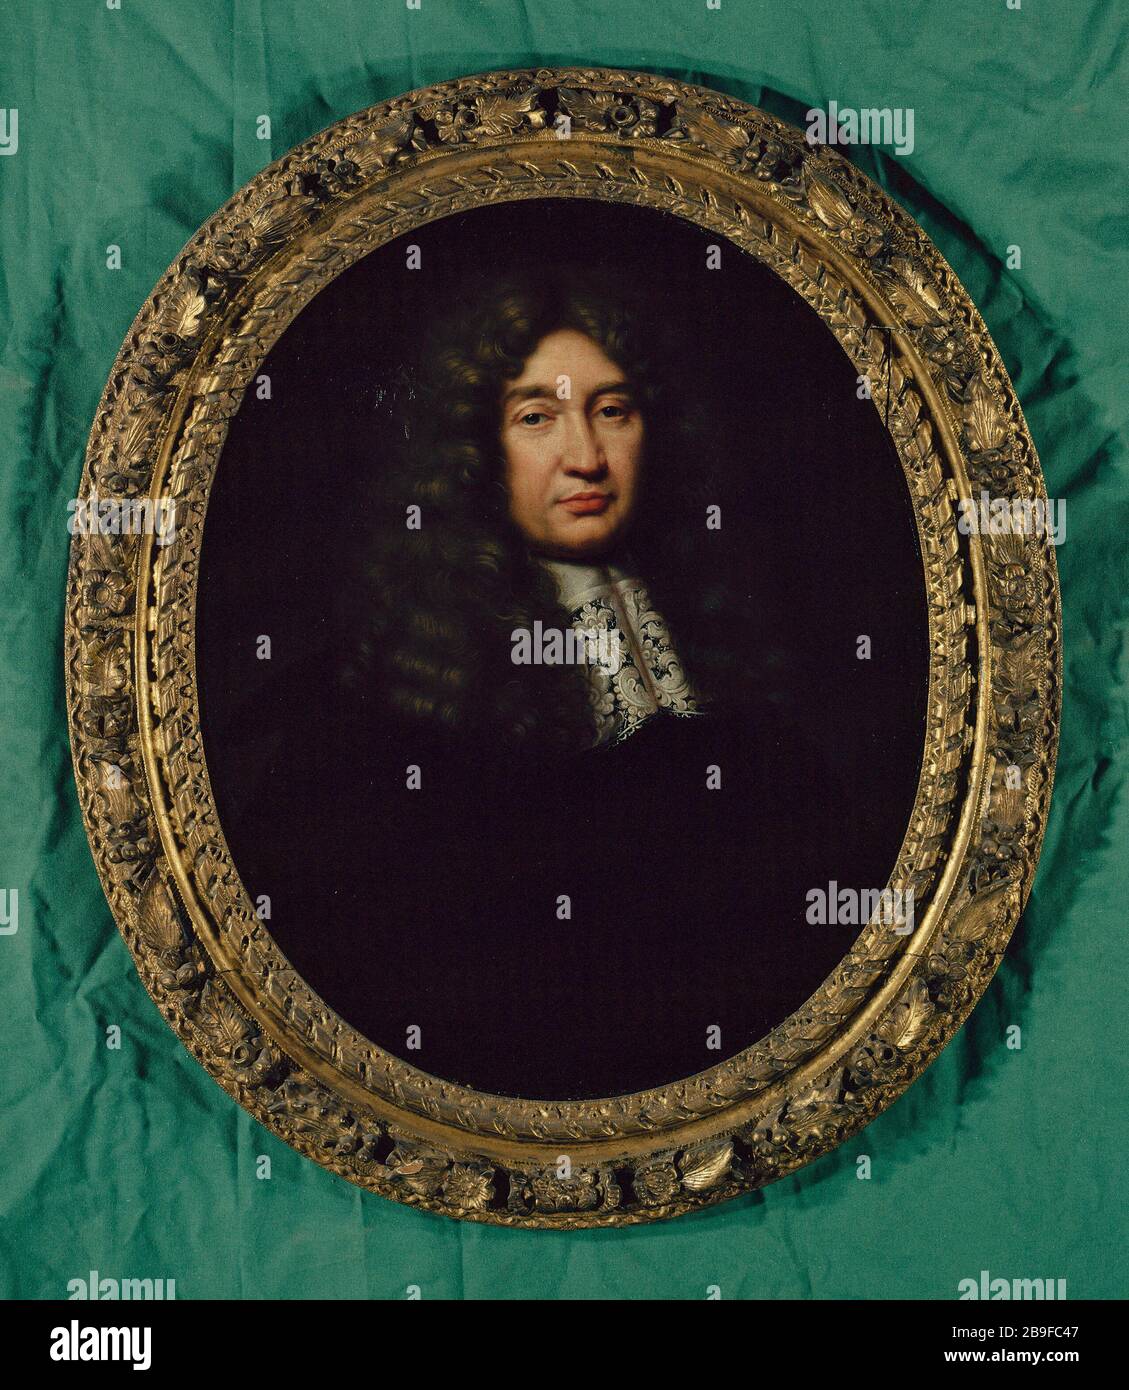 CLAUDE THE PELETIER Pierre Mignard. 'Claude Le Peletier (1630-1711), Prévôt des marchands de 1668 à 1676'. Huile sur toile. Paris, musée Carnavalet. Stock Photo